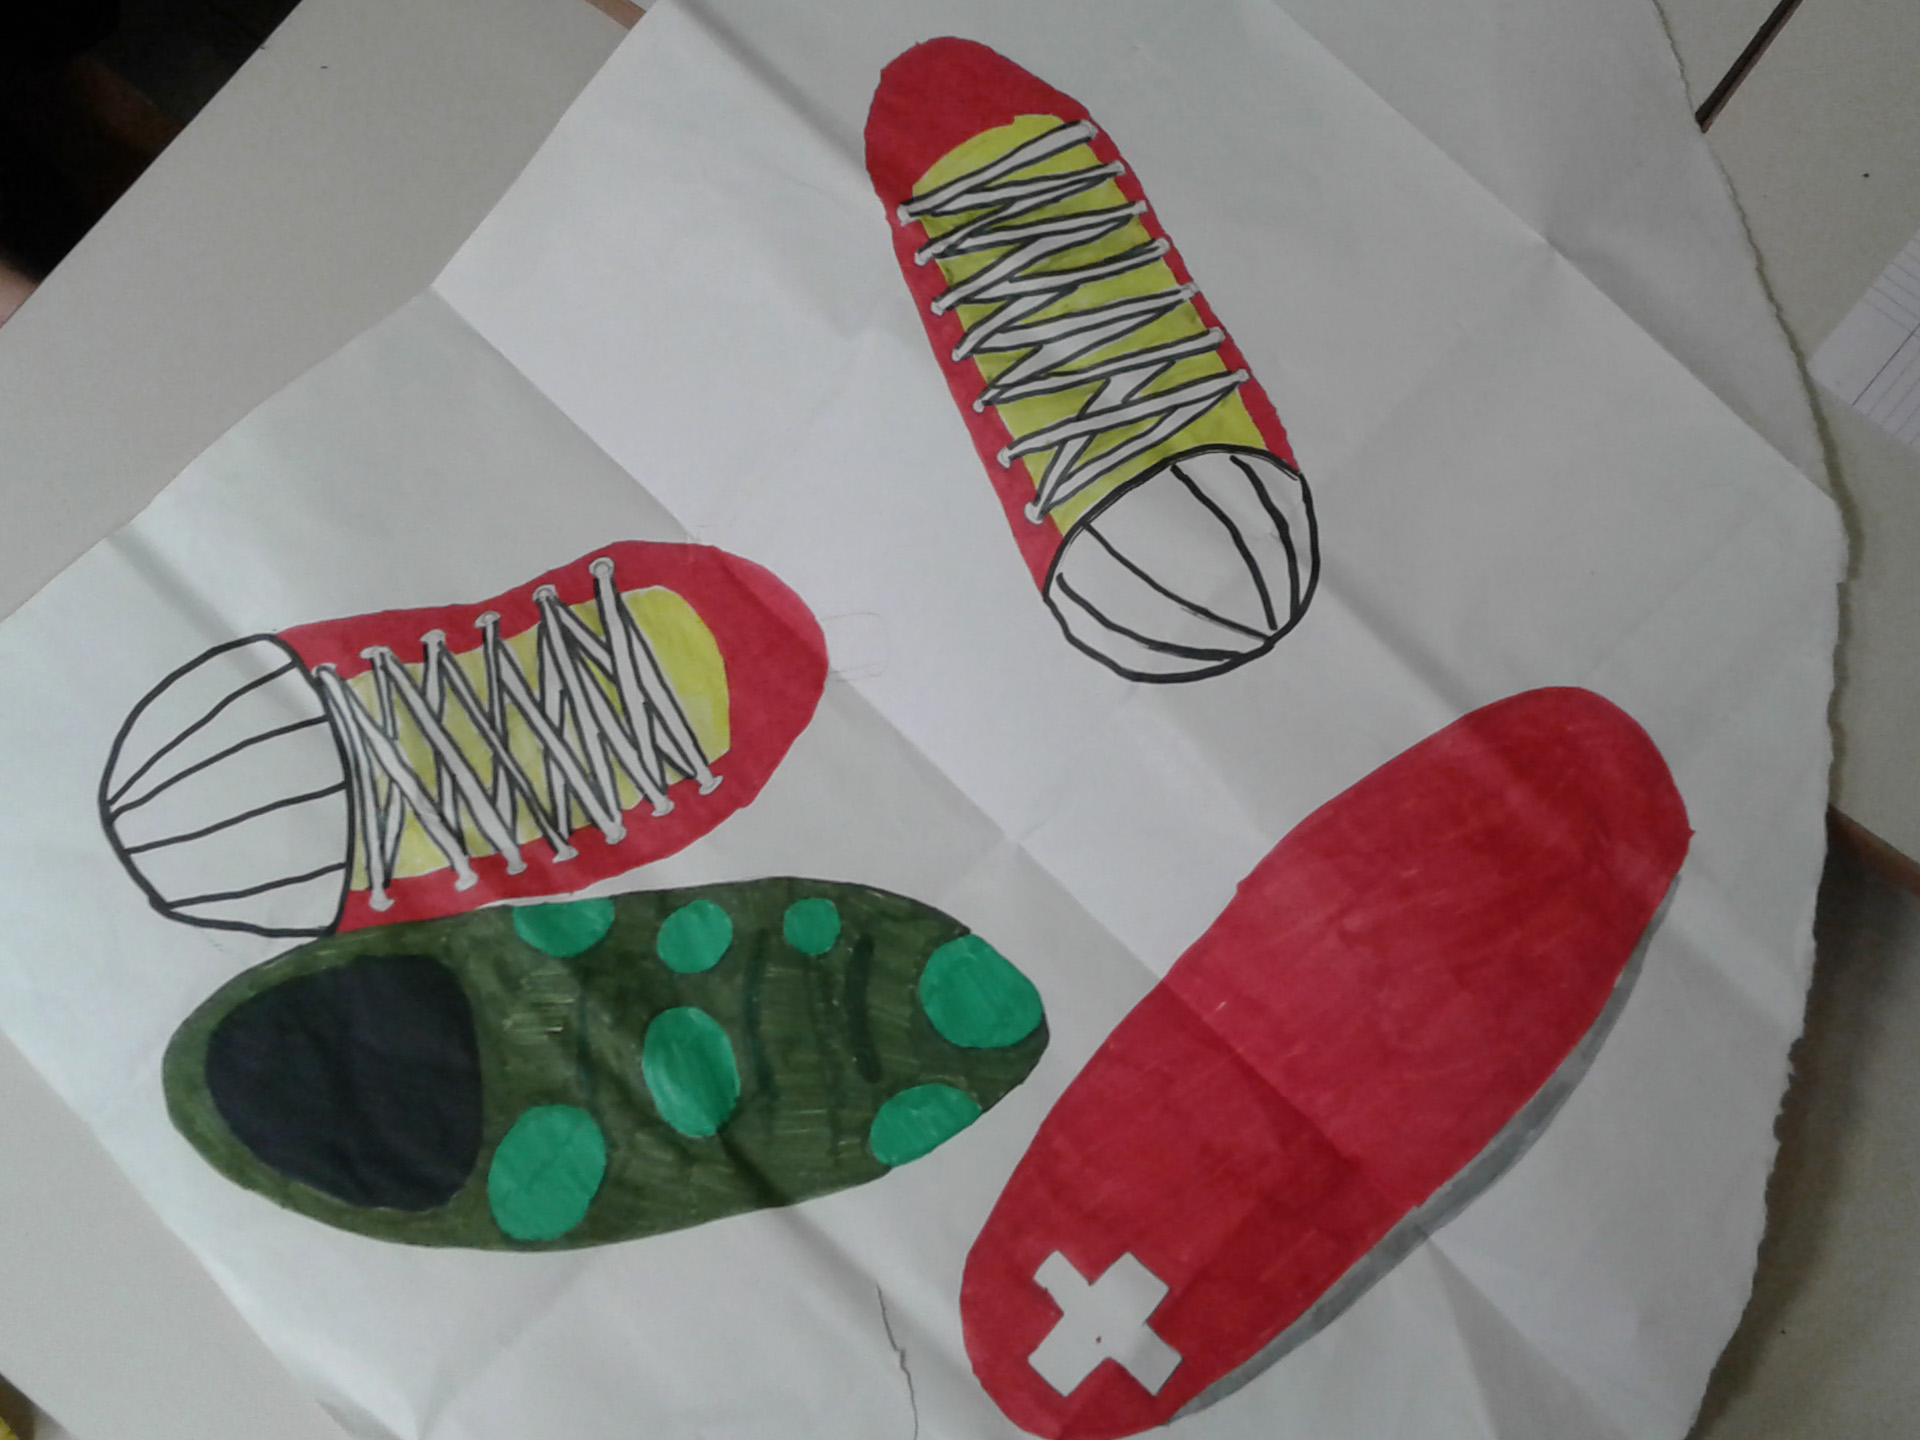 Disegno fatto da un bambino di scarpe da ginnastica, sacco a pelo e kit di pronto soccorso